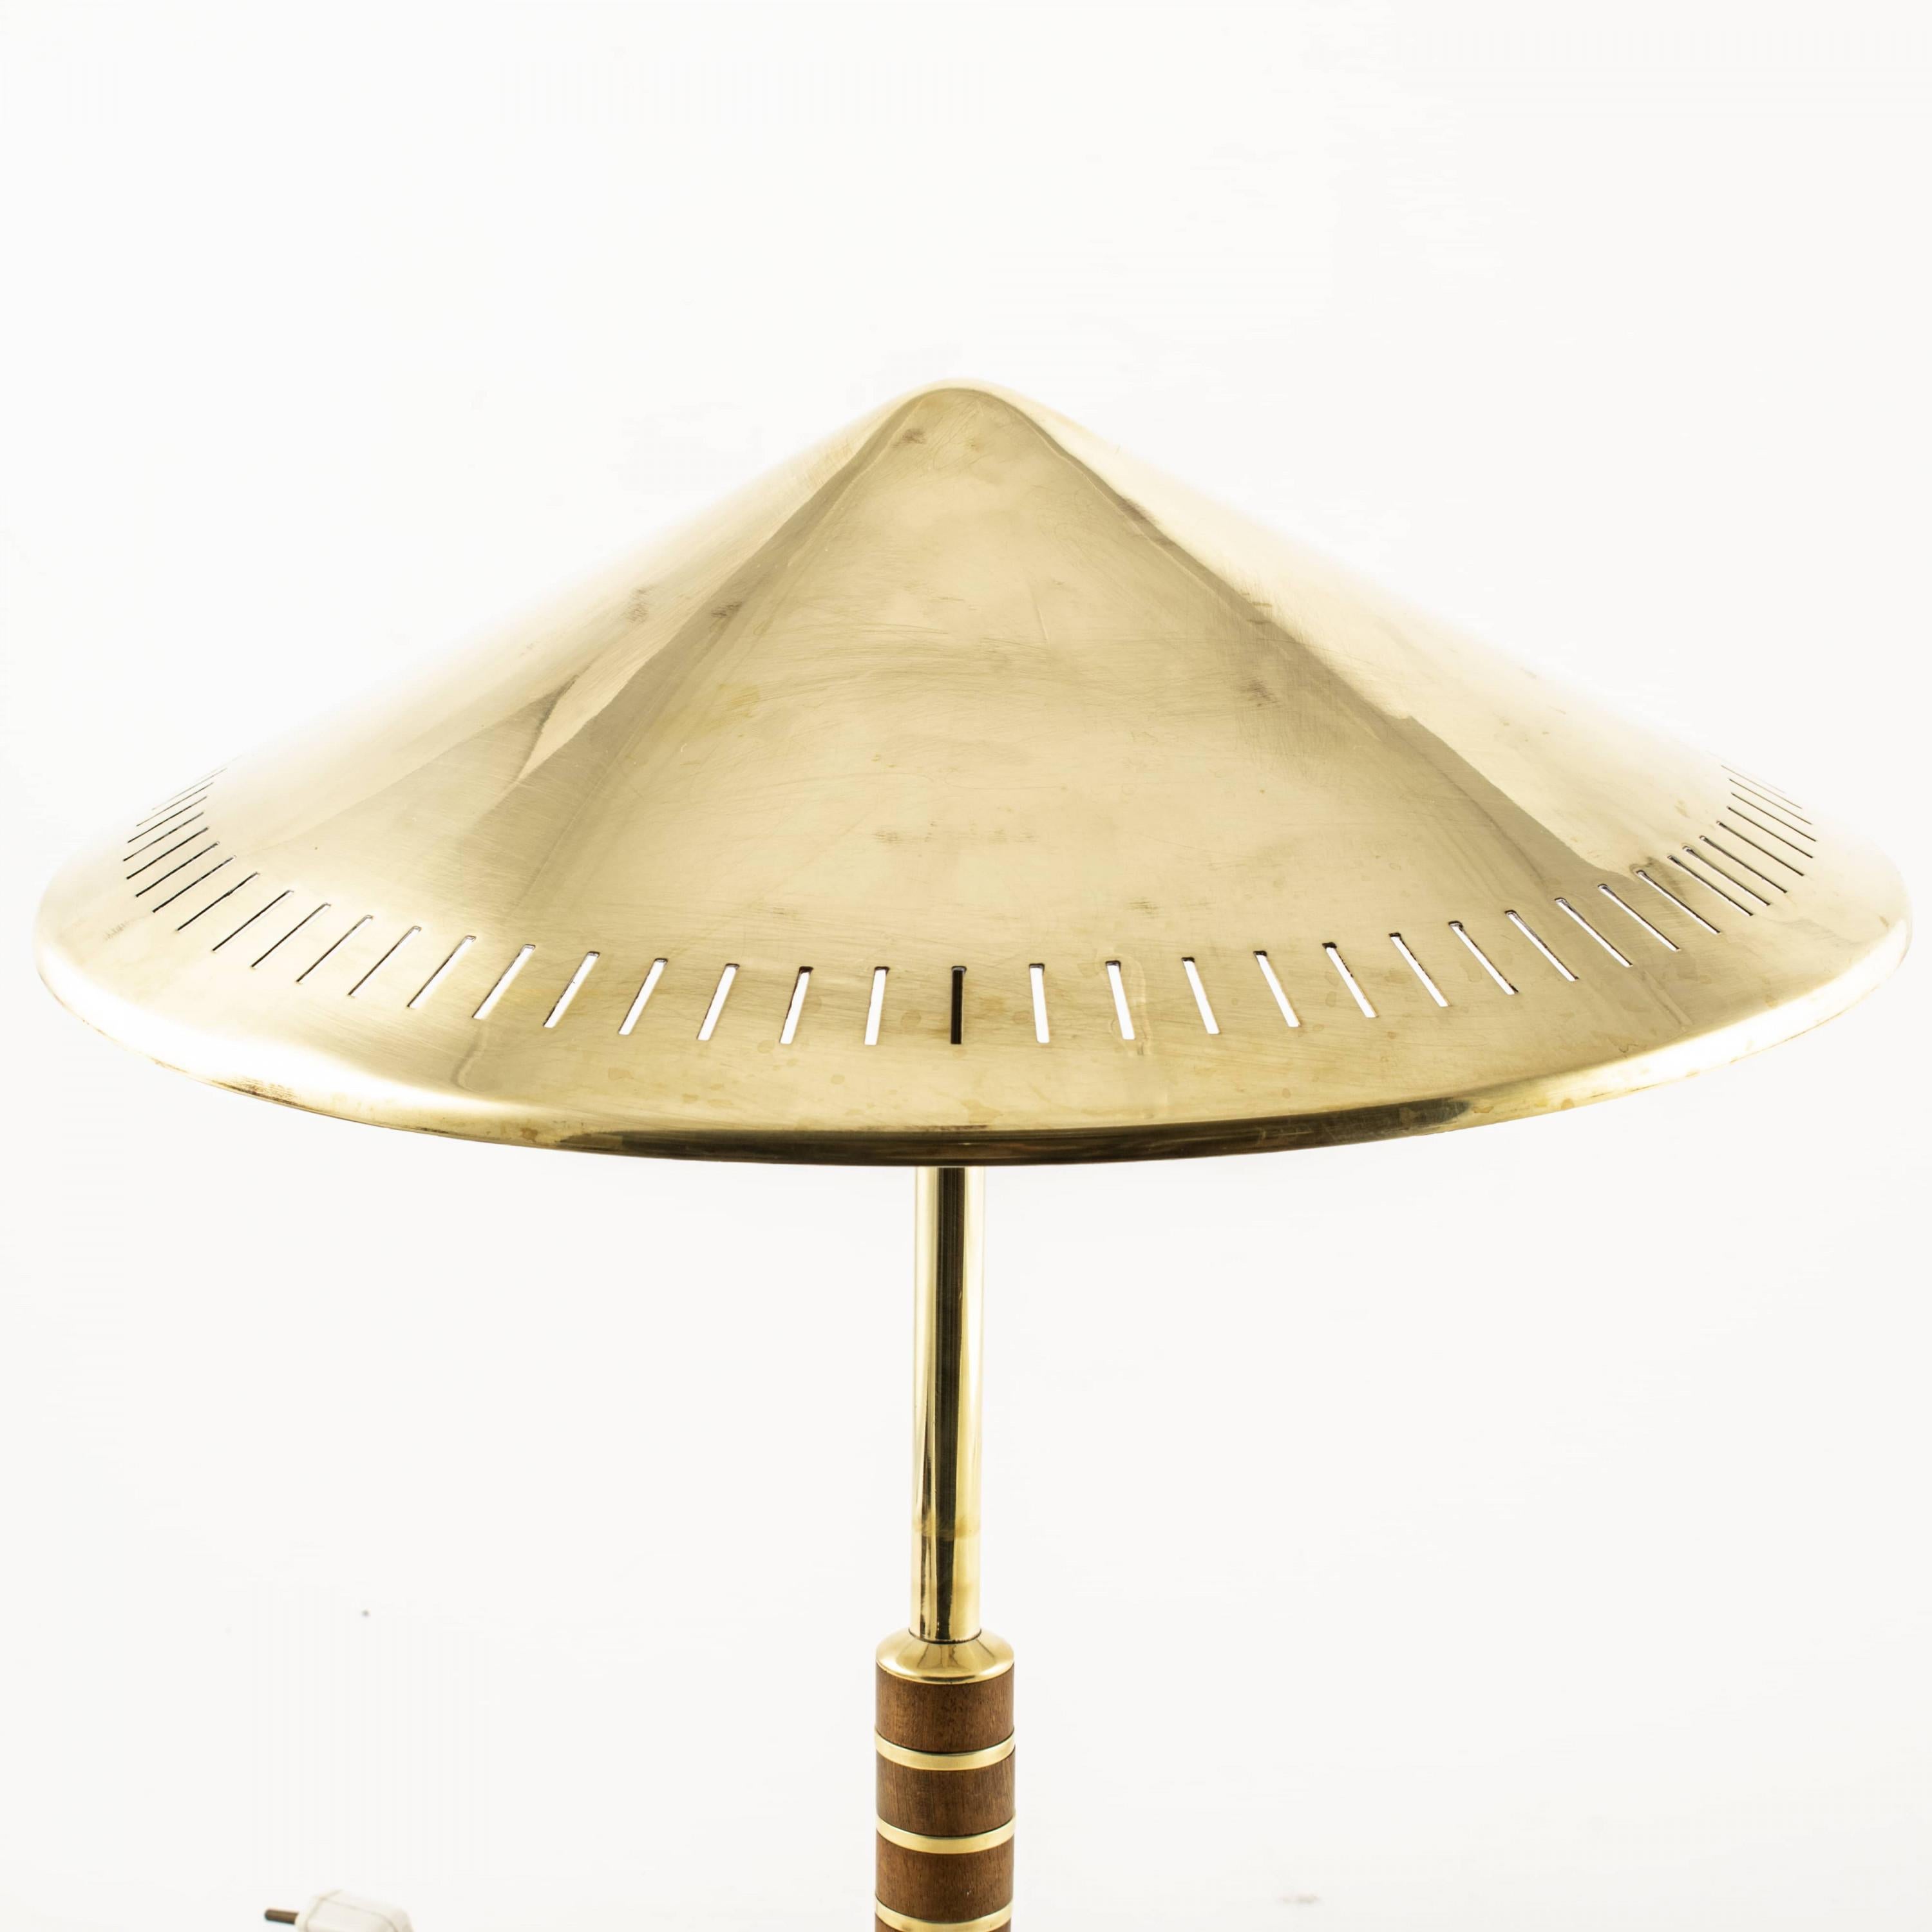 Lampe de table danoise en laiton de Lyfa 1956 conçue par Bent Karlby. Modèle B146.
Laiton massif avec deux sources lumineuses, tige décorée d'une bande de teck.

Etat intact, peut être polie brillante si désiré.